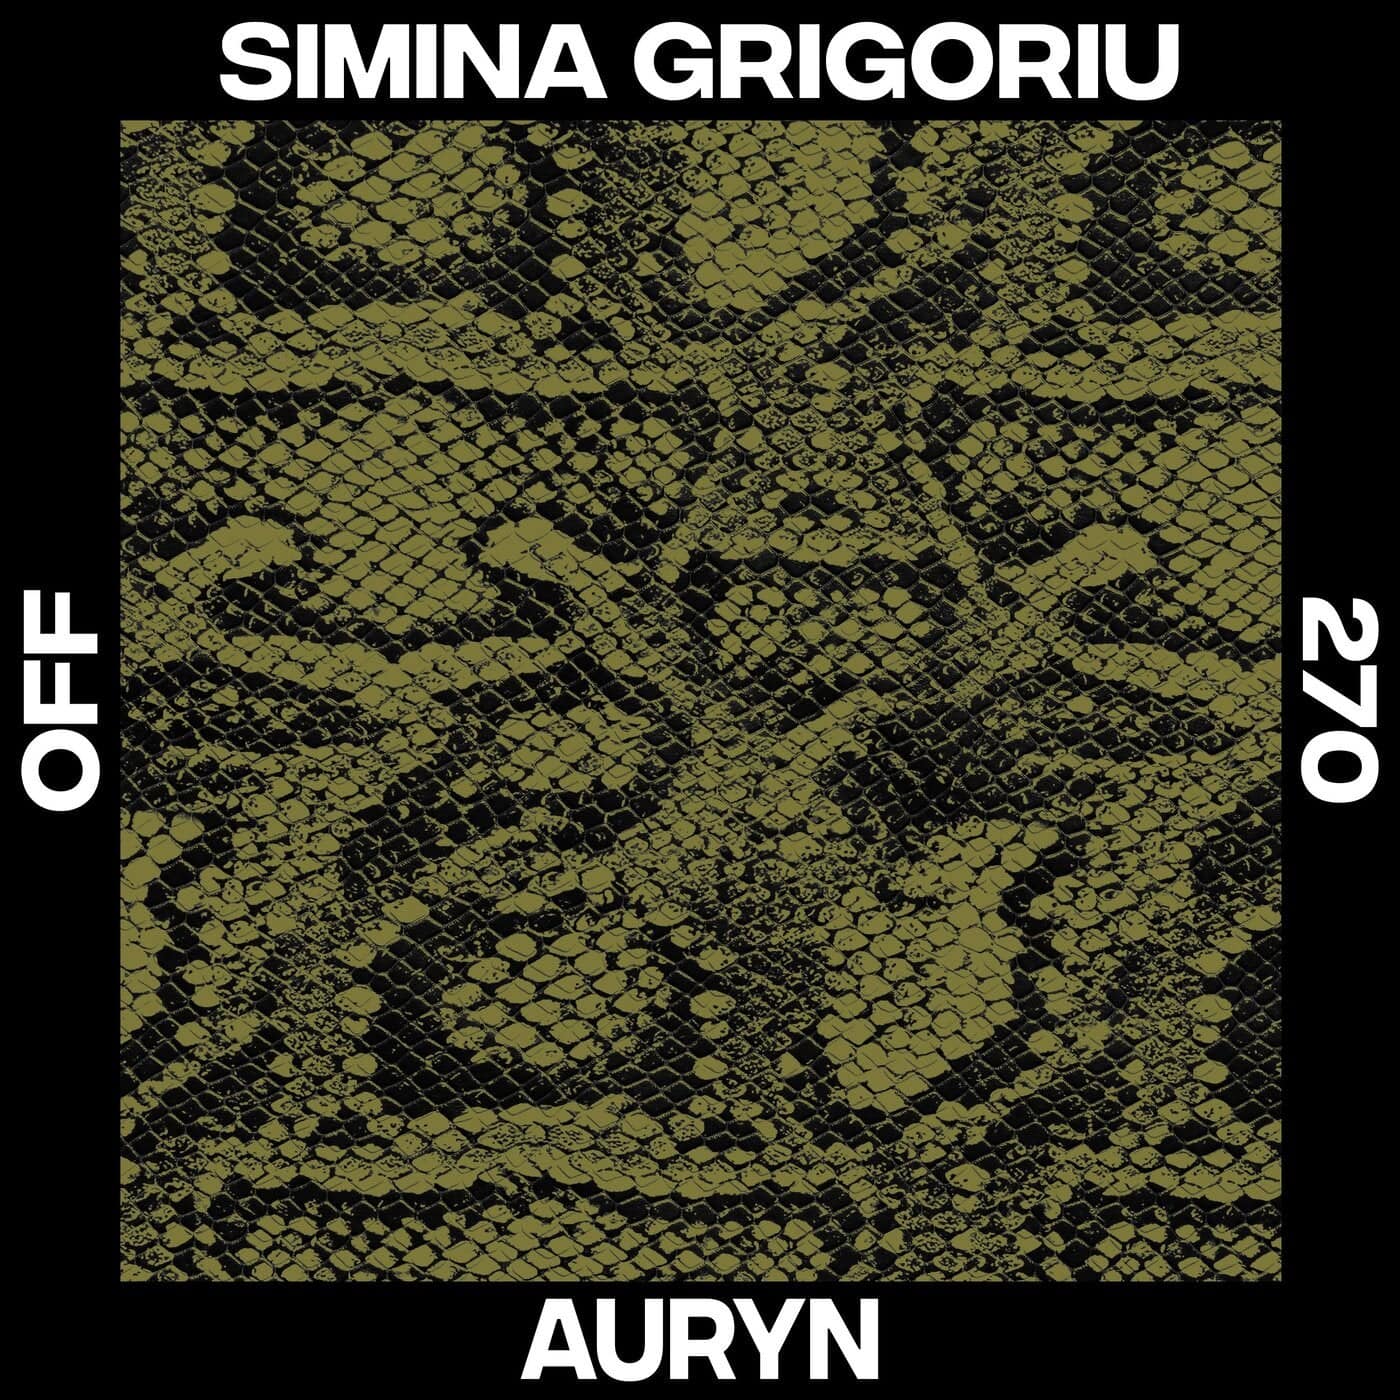 Download Simina Grigoriu - Auryn on Electrobuzz